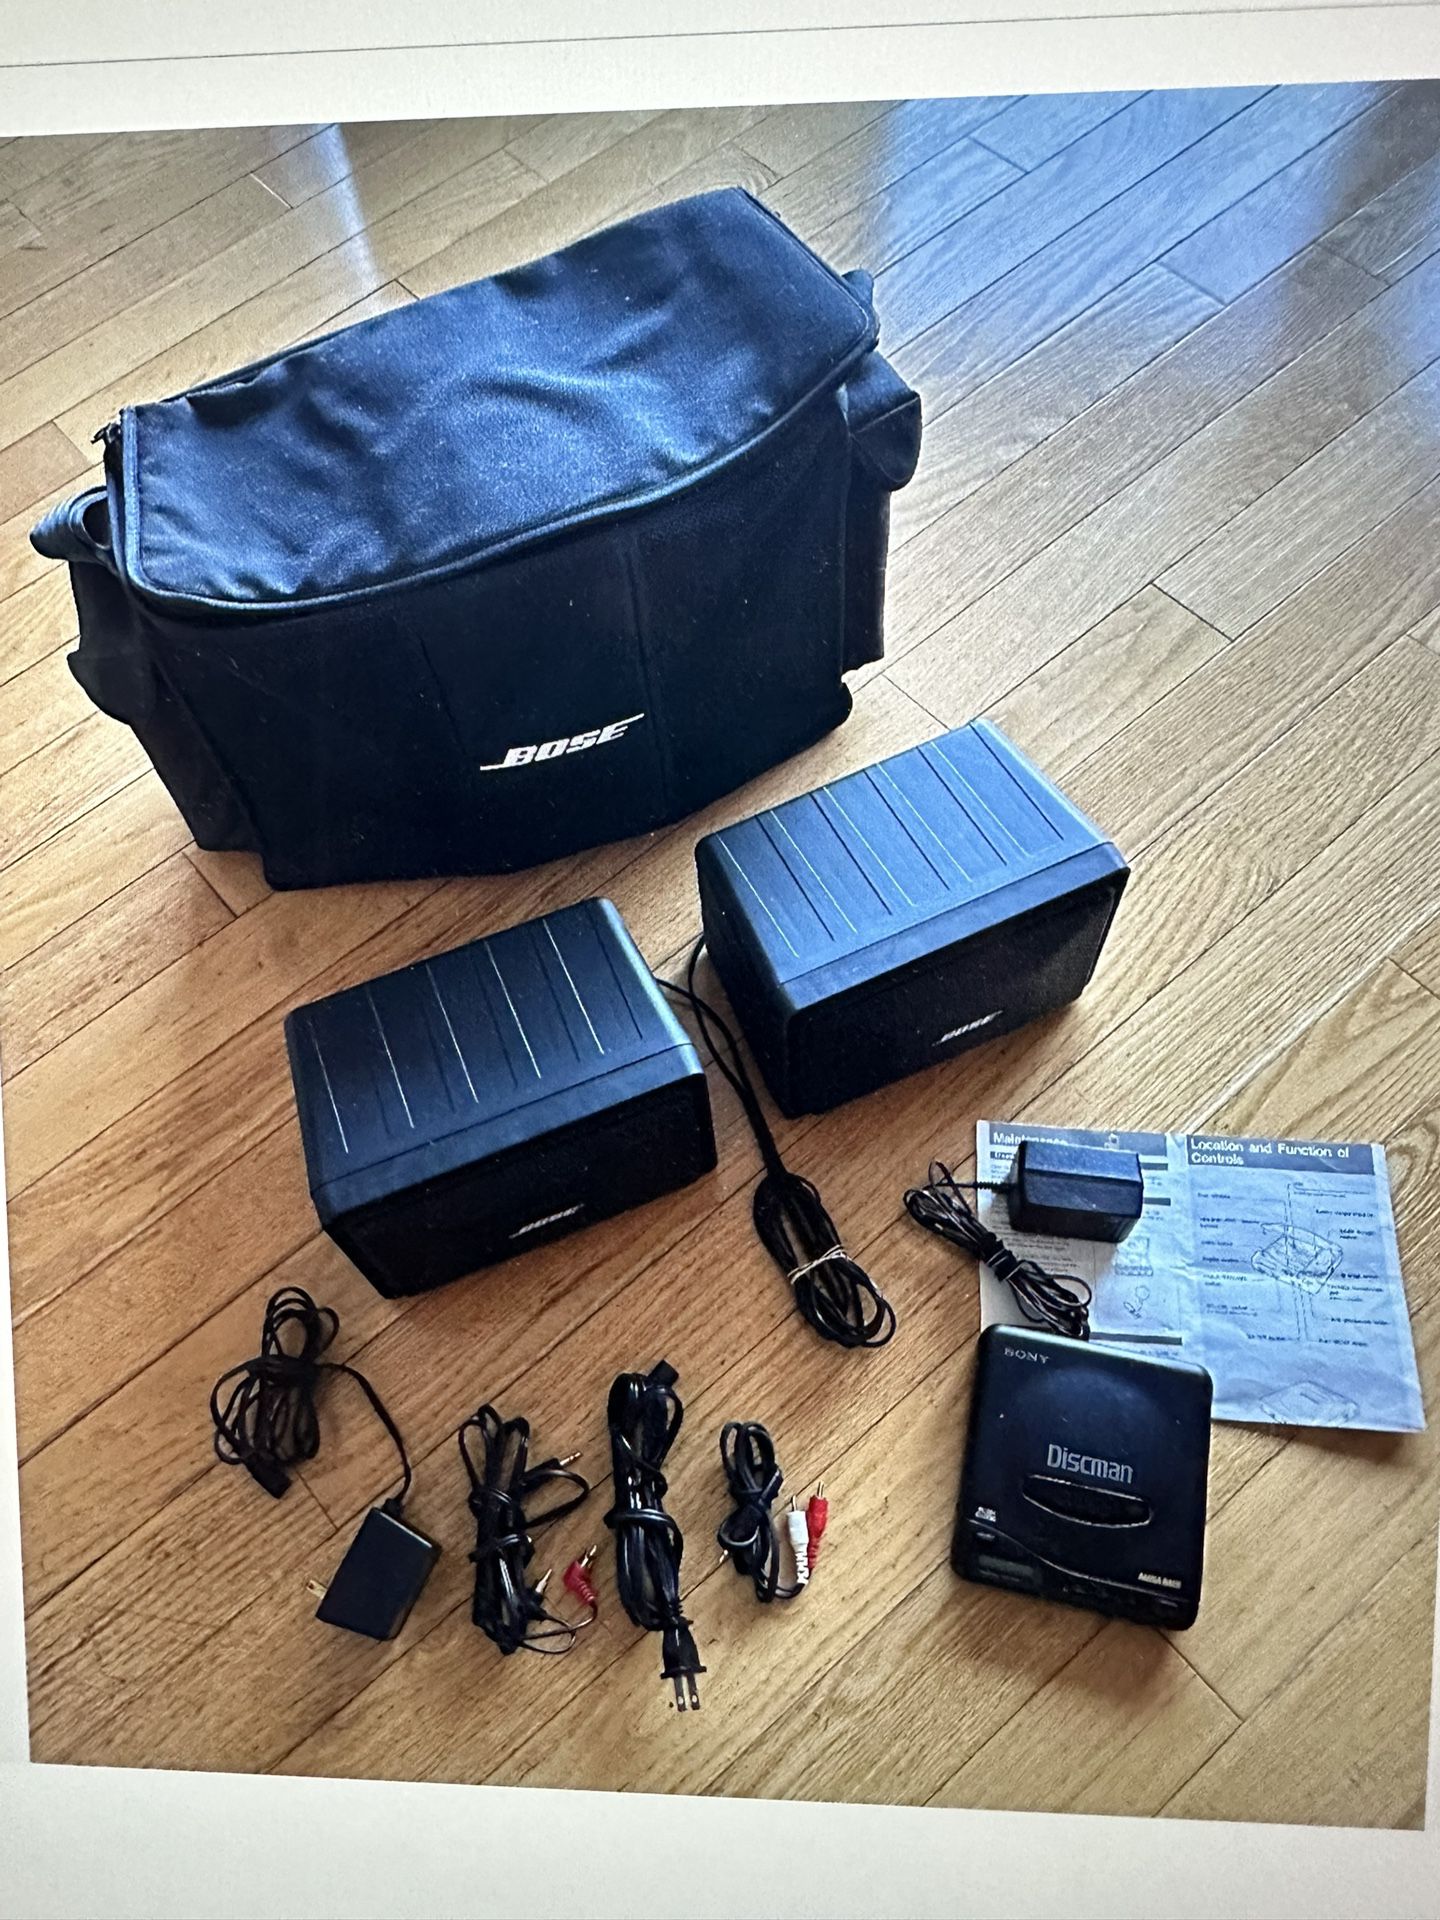 Portable BOSE Room Mate II w/speakers,manuals,headphones,bag, & DISCMAN